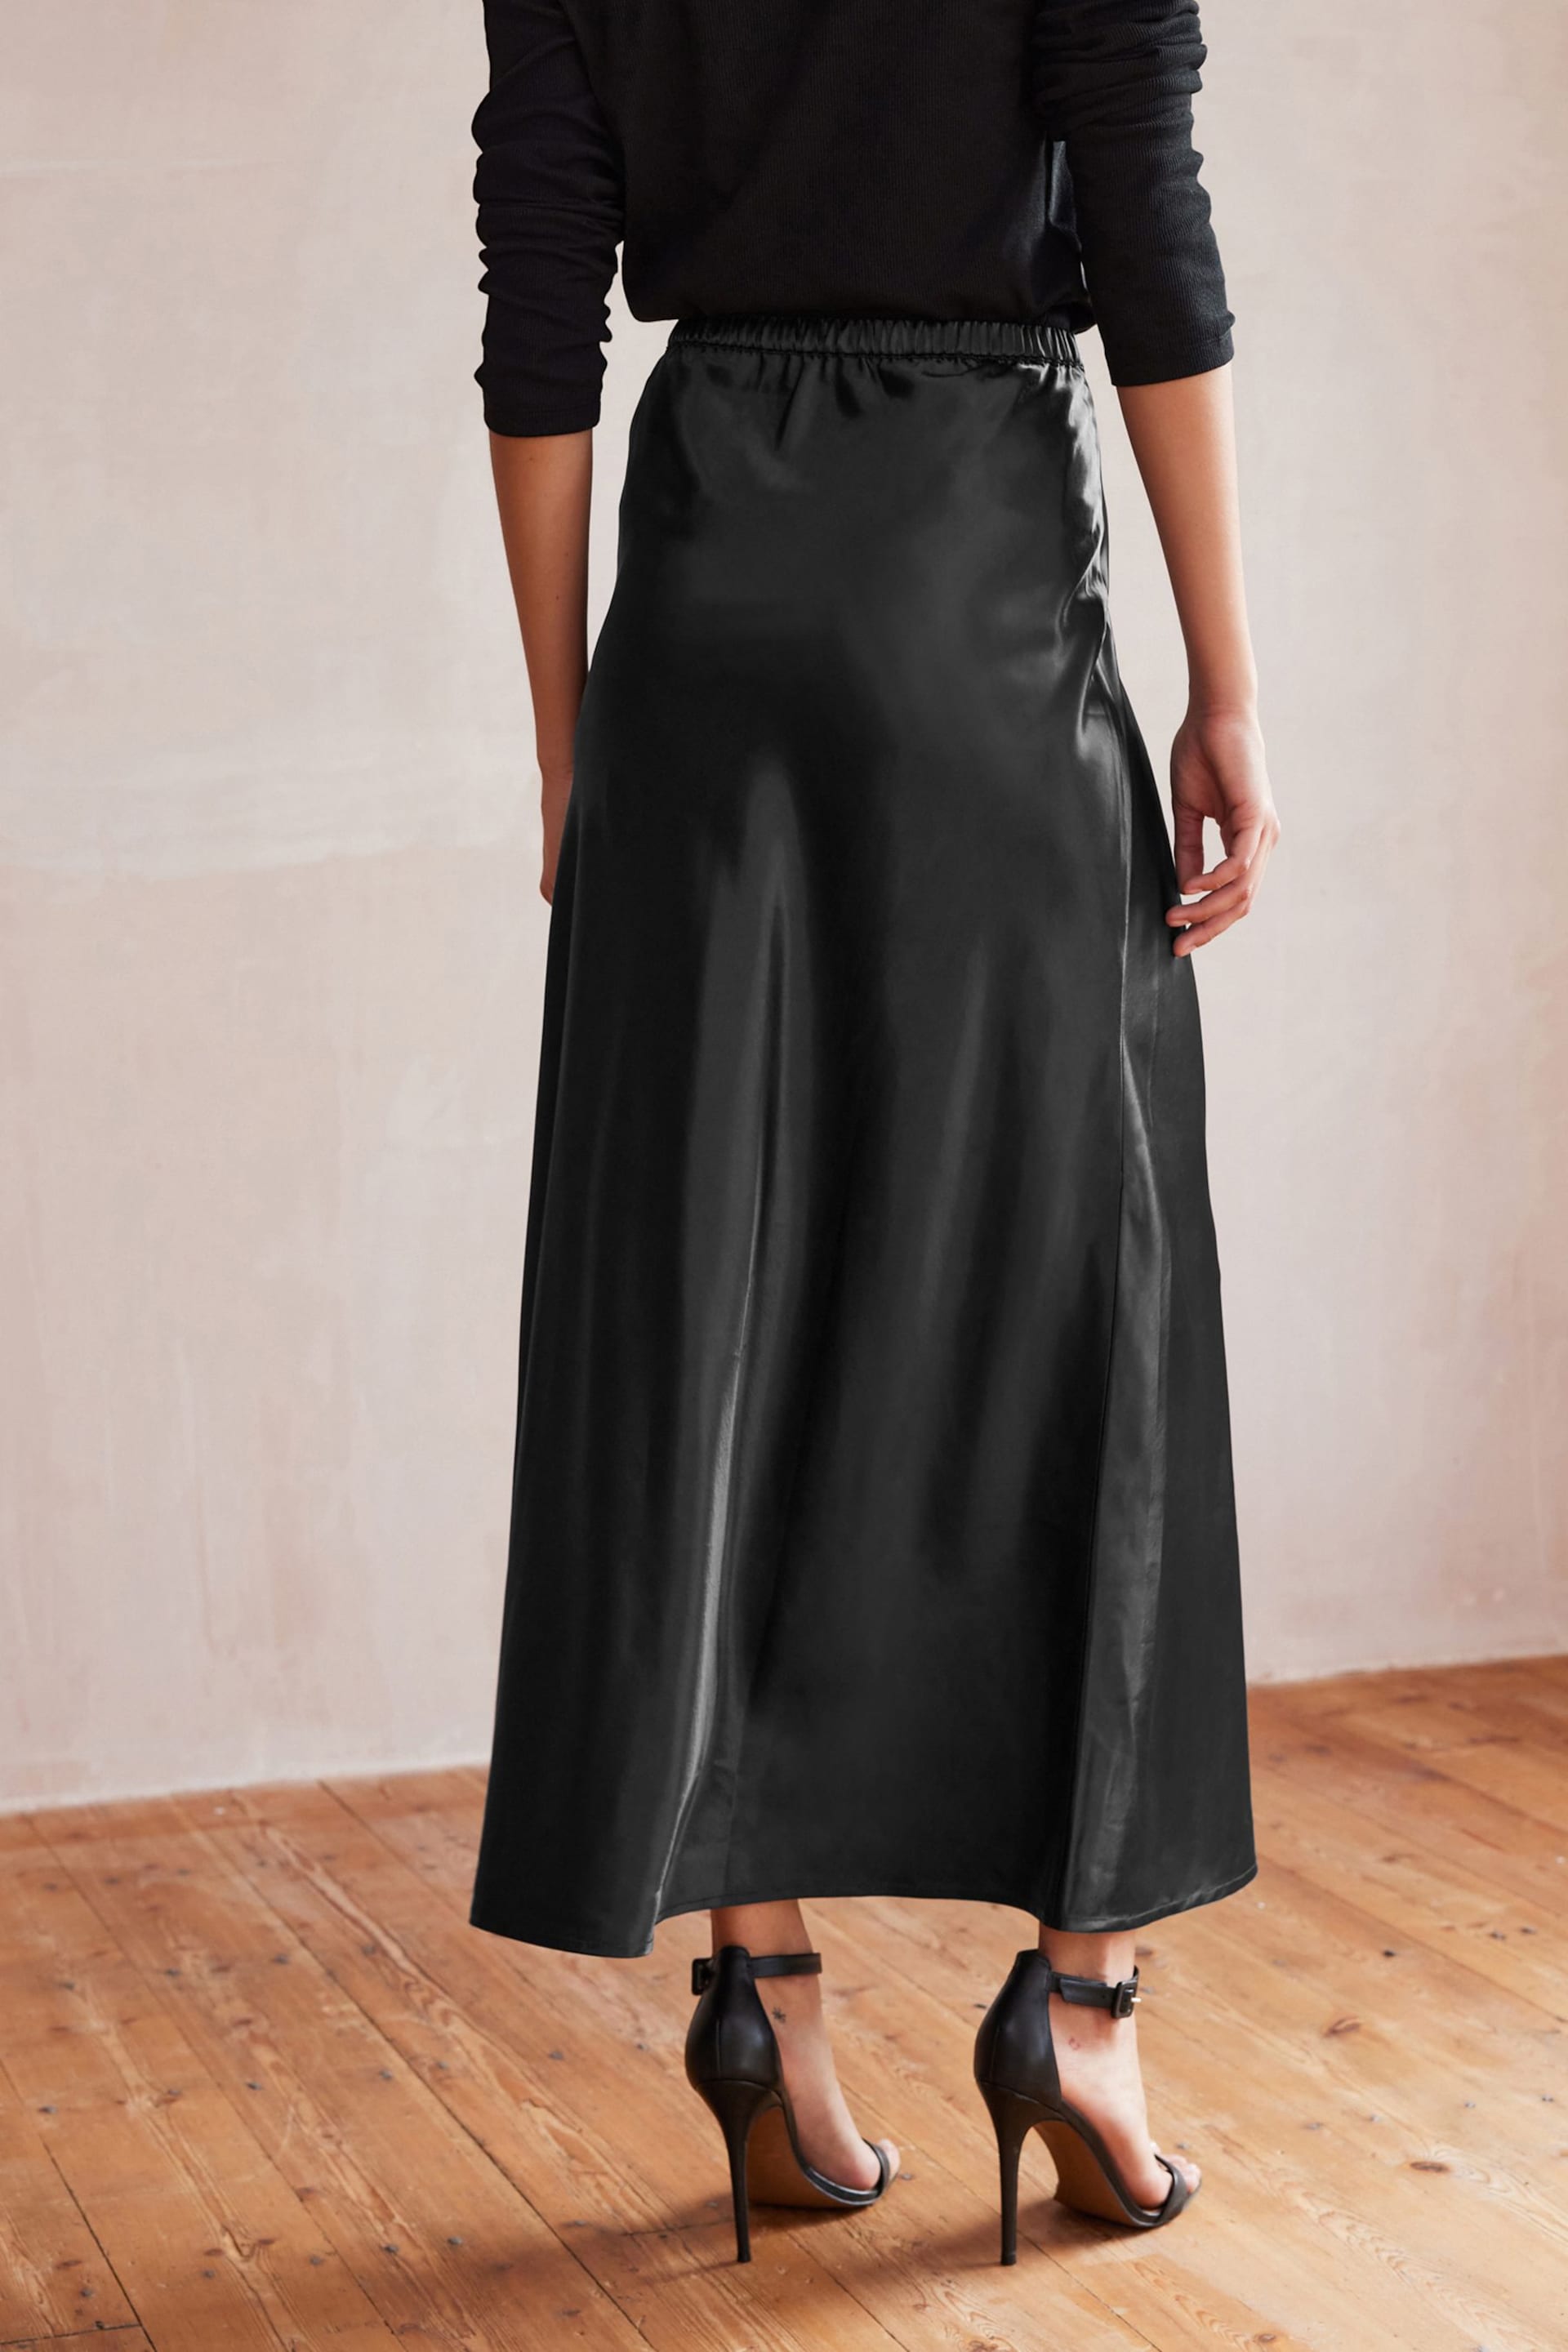 Black Long Length Satin Skirt - Image 4 of 7